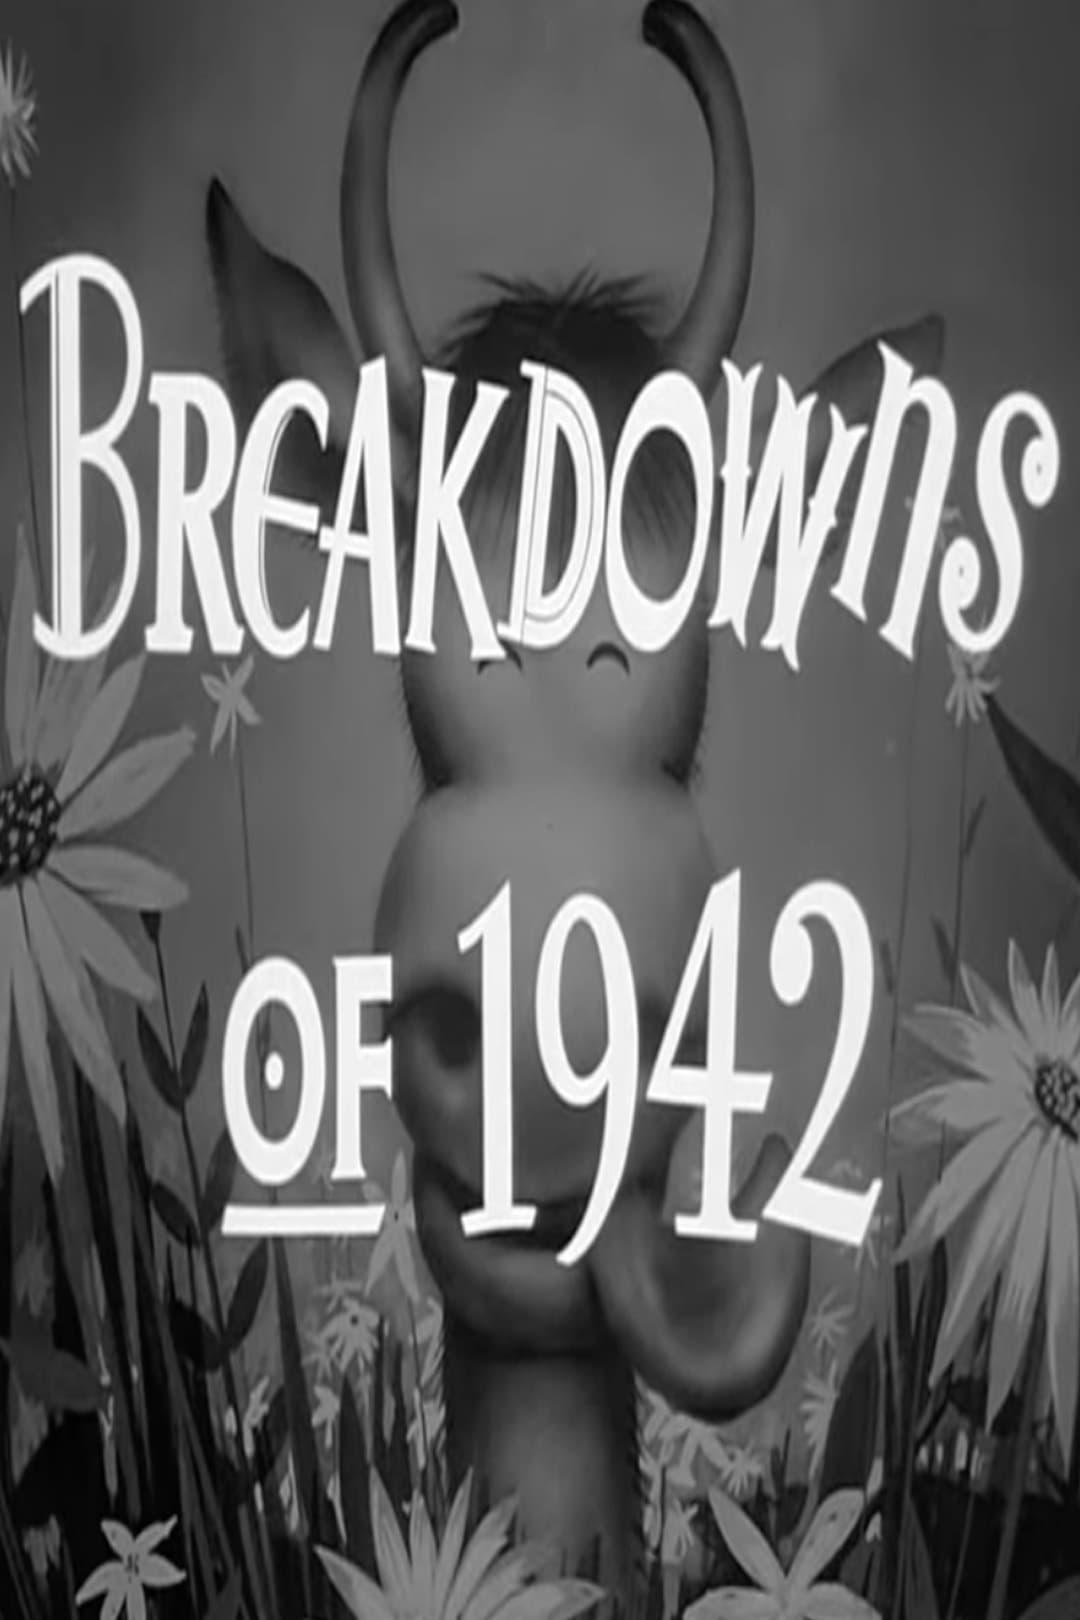 Breakdowns of 1942 poster